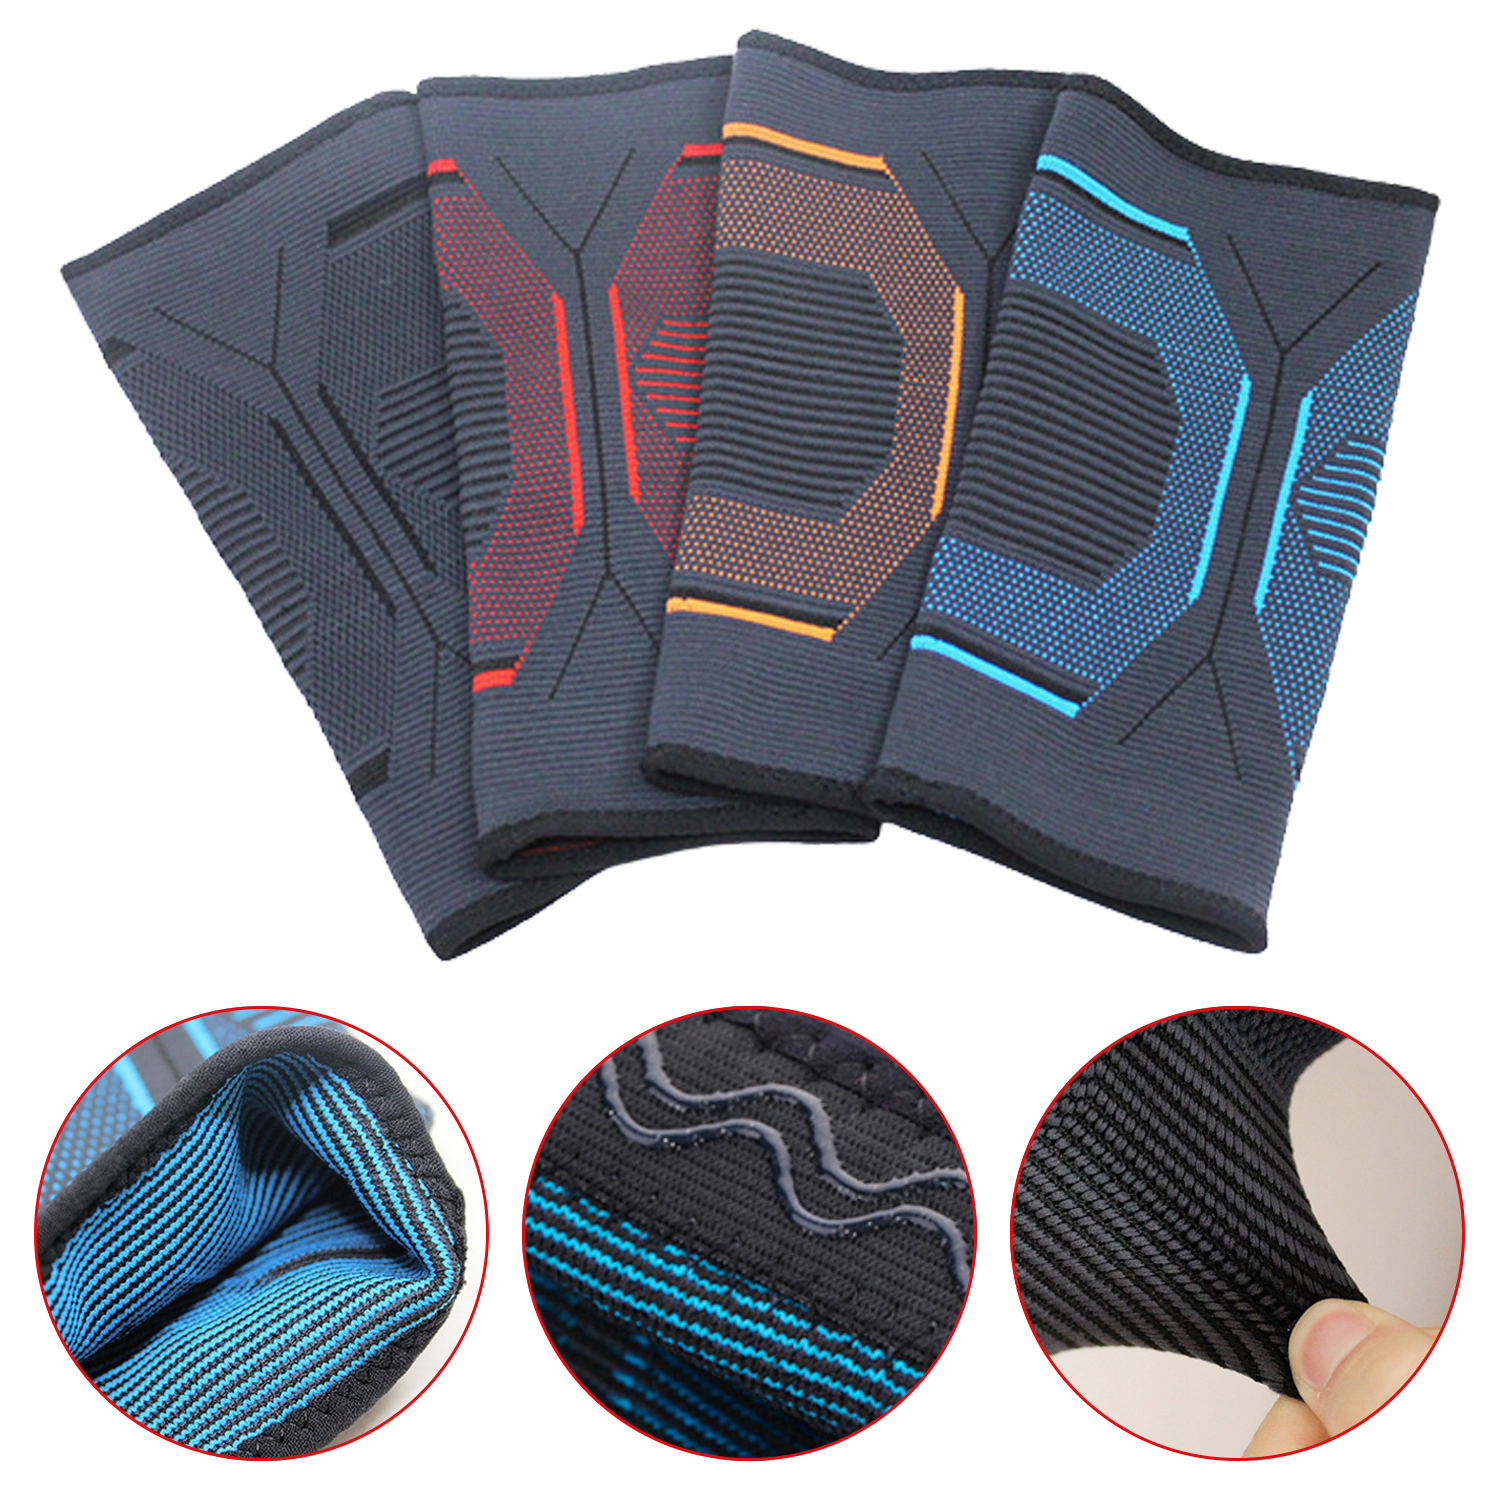 Almohadillas de codo de punto deportivo, almohadillas protectoras de codo de compresión, almohadillas de soporte para tenis